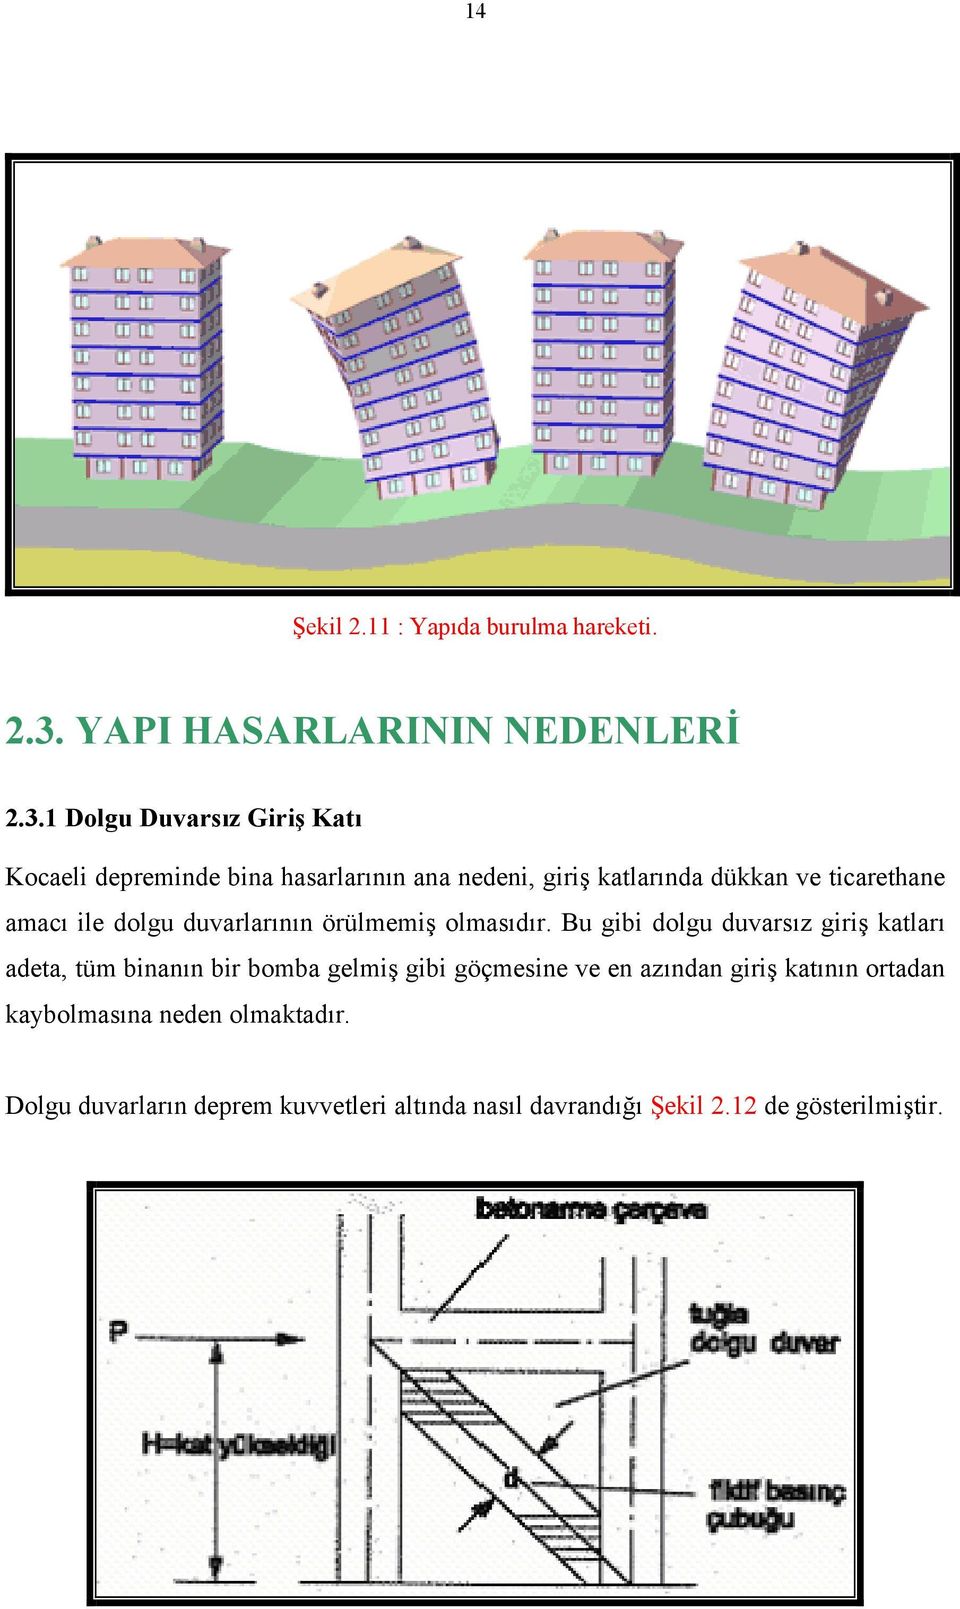 1 Dolgu Duvarsız Giriş Katı Kocaeli depreminde bina hasarlarının ana nedeni, giriş katlarında dükkan ve ticarethane amacı